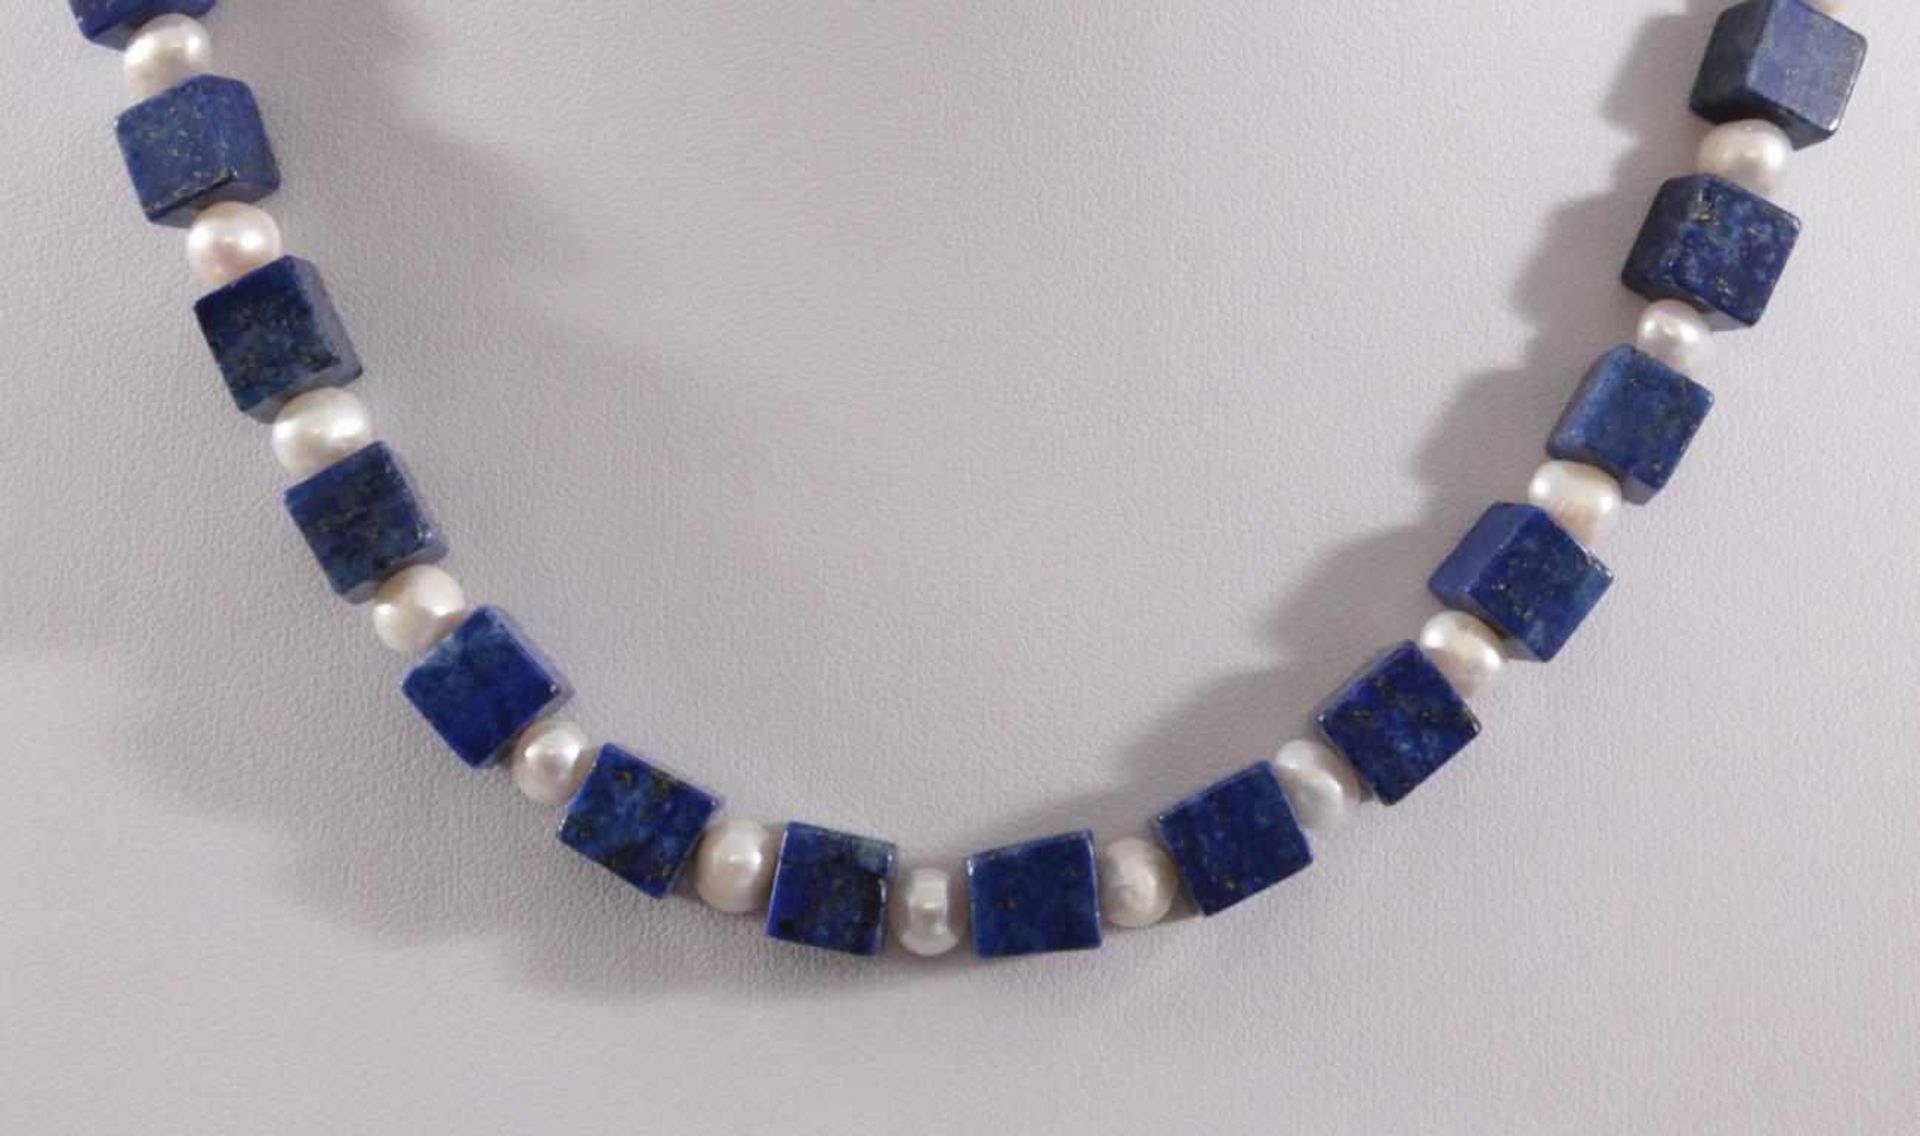 Halskette mit Lapislazuli-Steinen und Frischwasser-PerlenKarabiner-Verschluss aus Sterling Silber, - Image 2 of 2